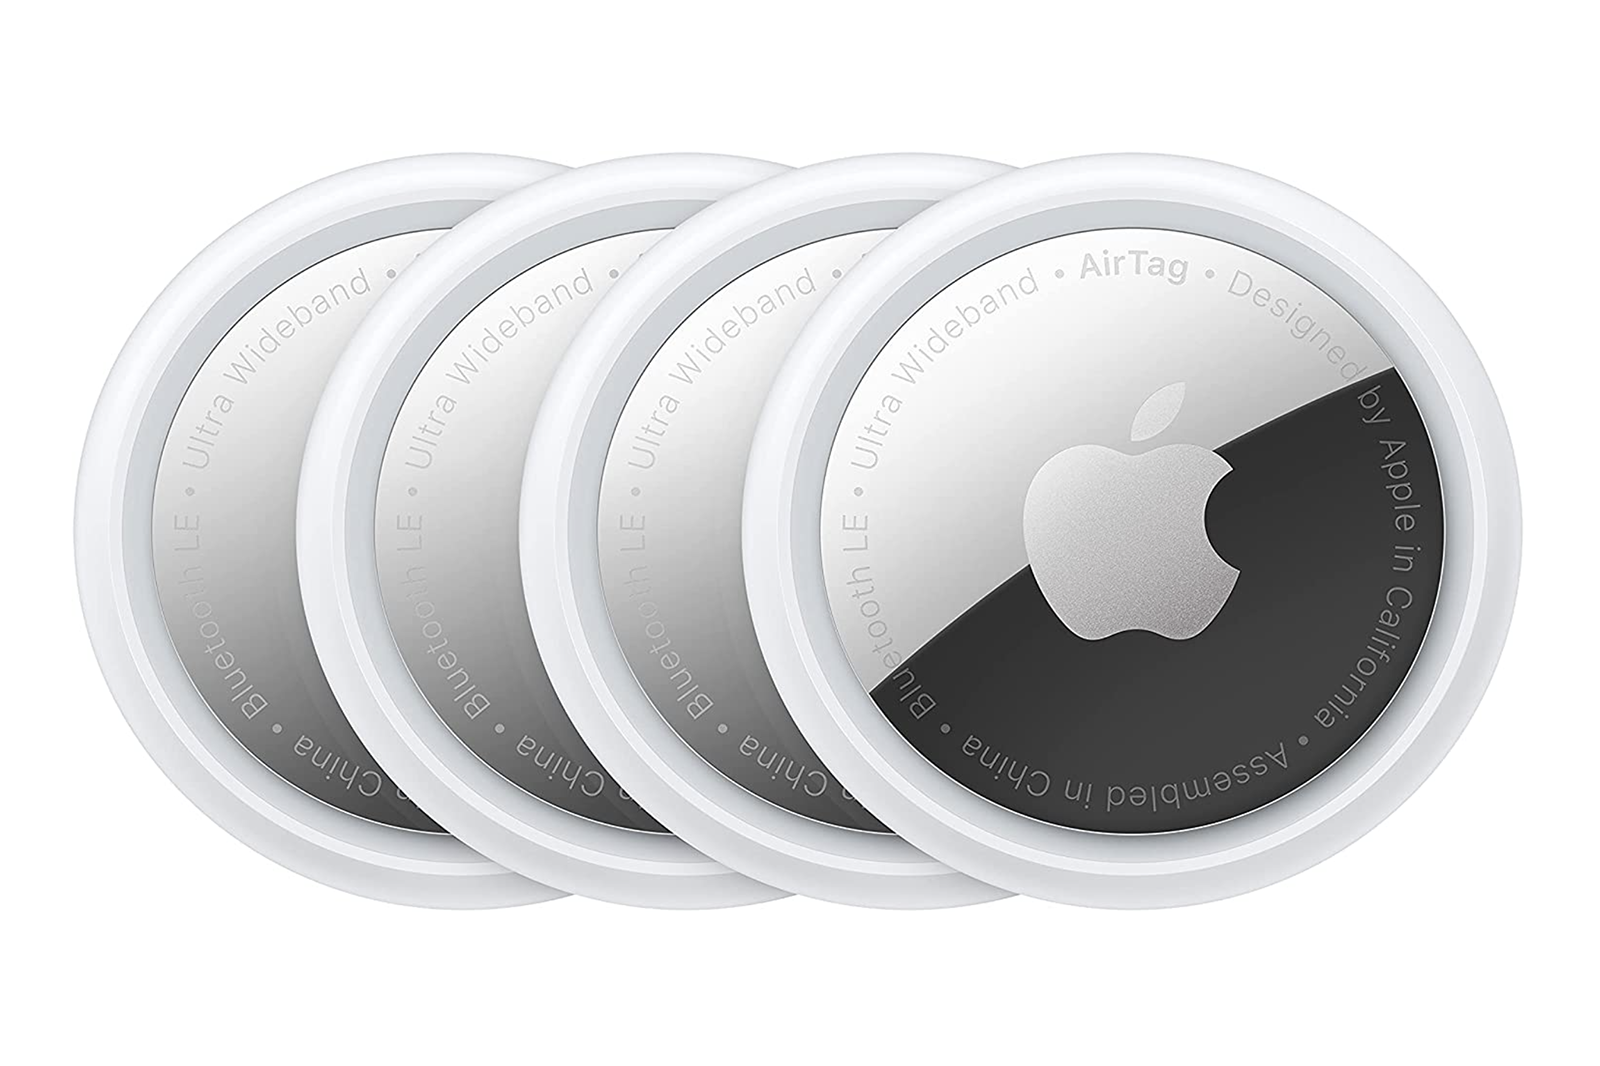 4-pak Apple AirTag jest już w sprzedaży